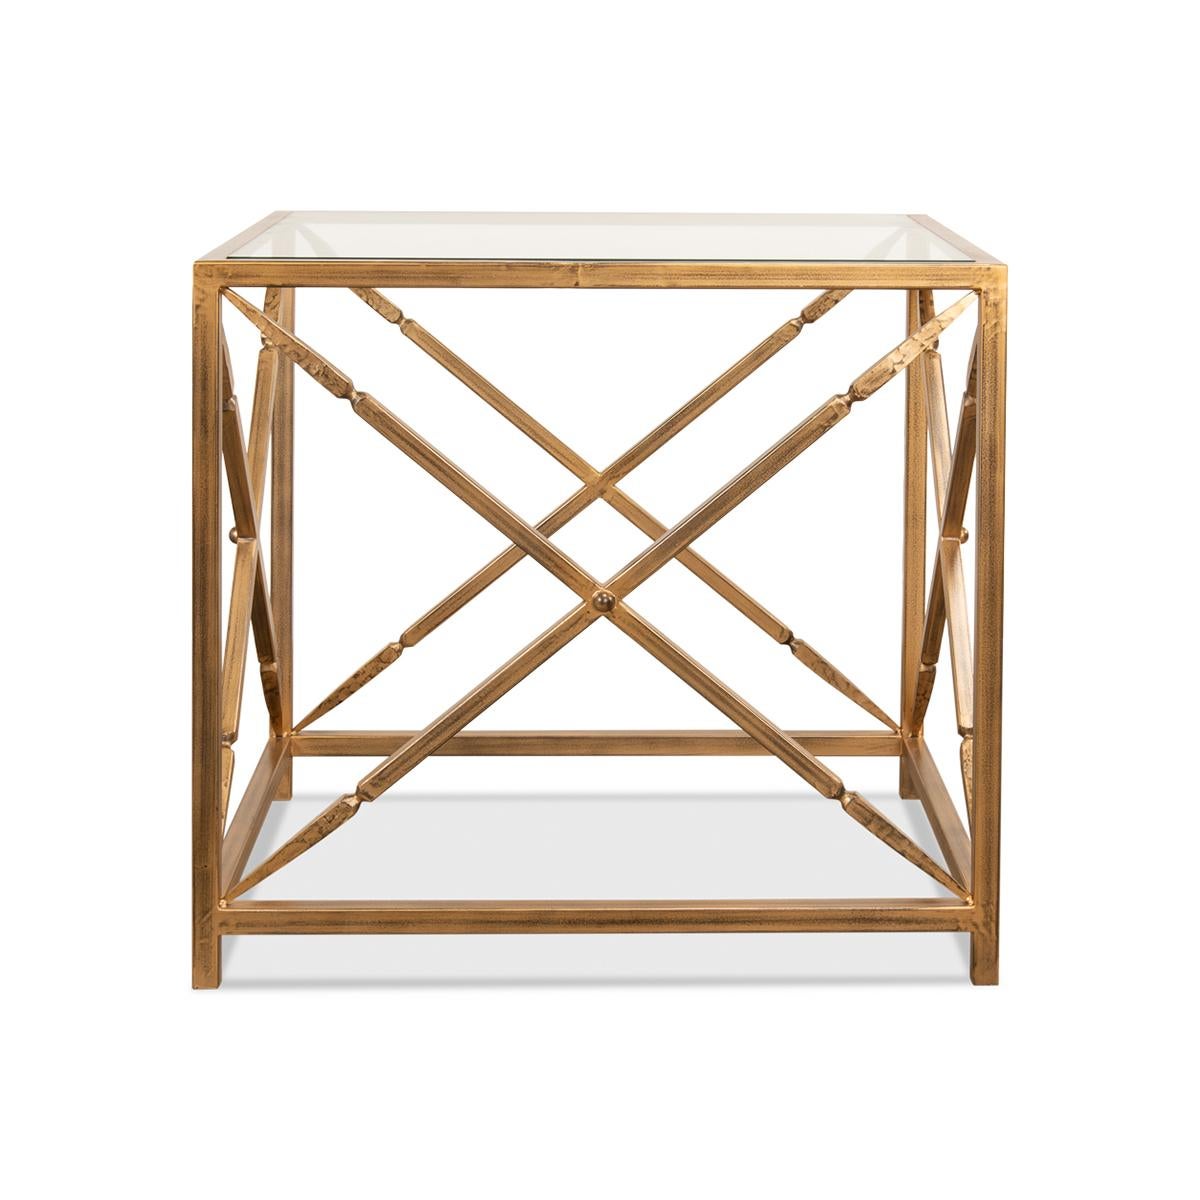 Avec un cadre en fer doré s'inspirant du design européen du XIXe siècle. Avec un plateau en verre encastré sur un cadre avec des supports en forme de X.

Dimensions : 30